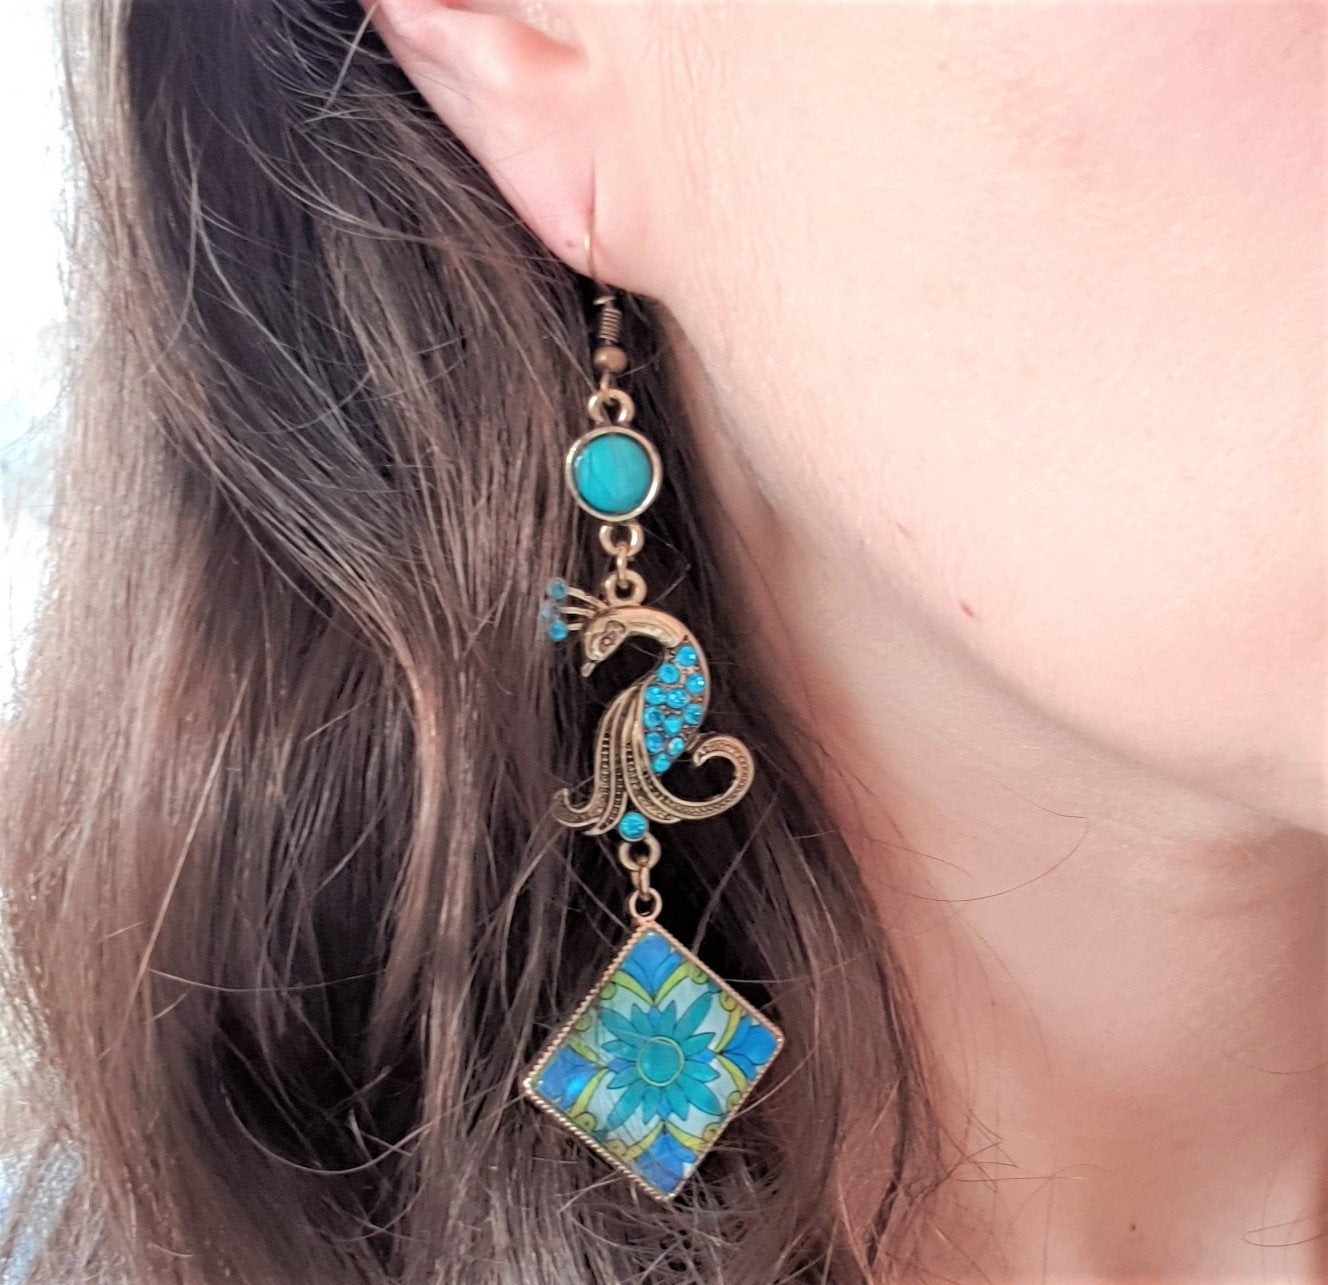 LUCINDA - Italian Tiles Peacock Earrings - ineslamy